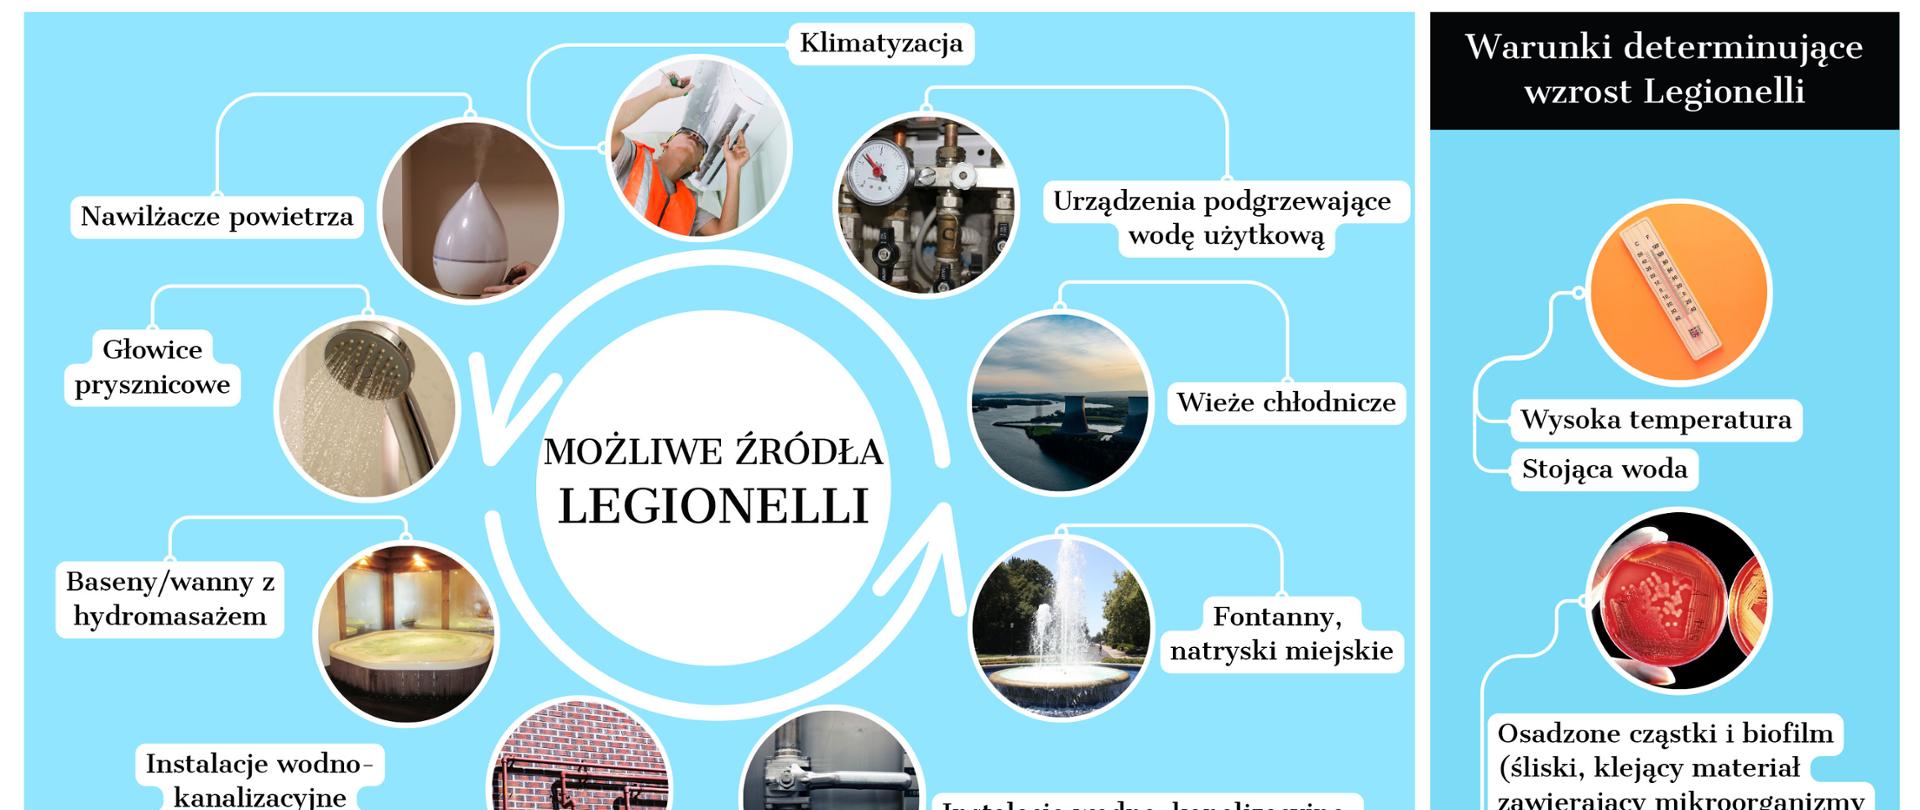 Czym_jest_legionella_-_infografika__